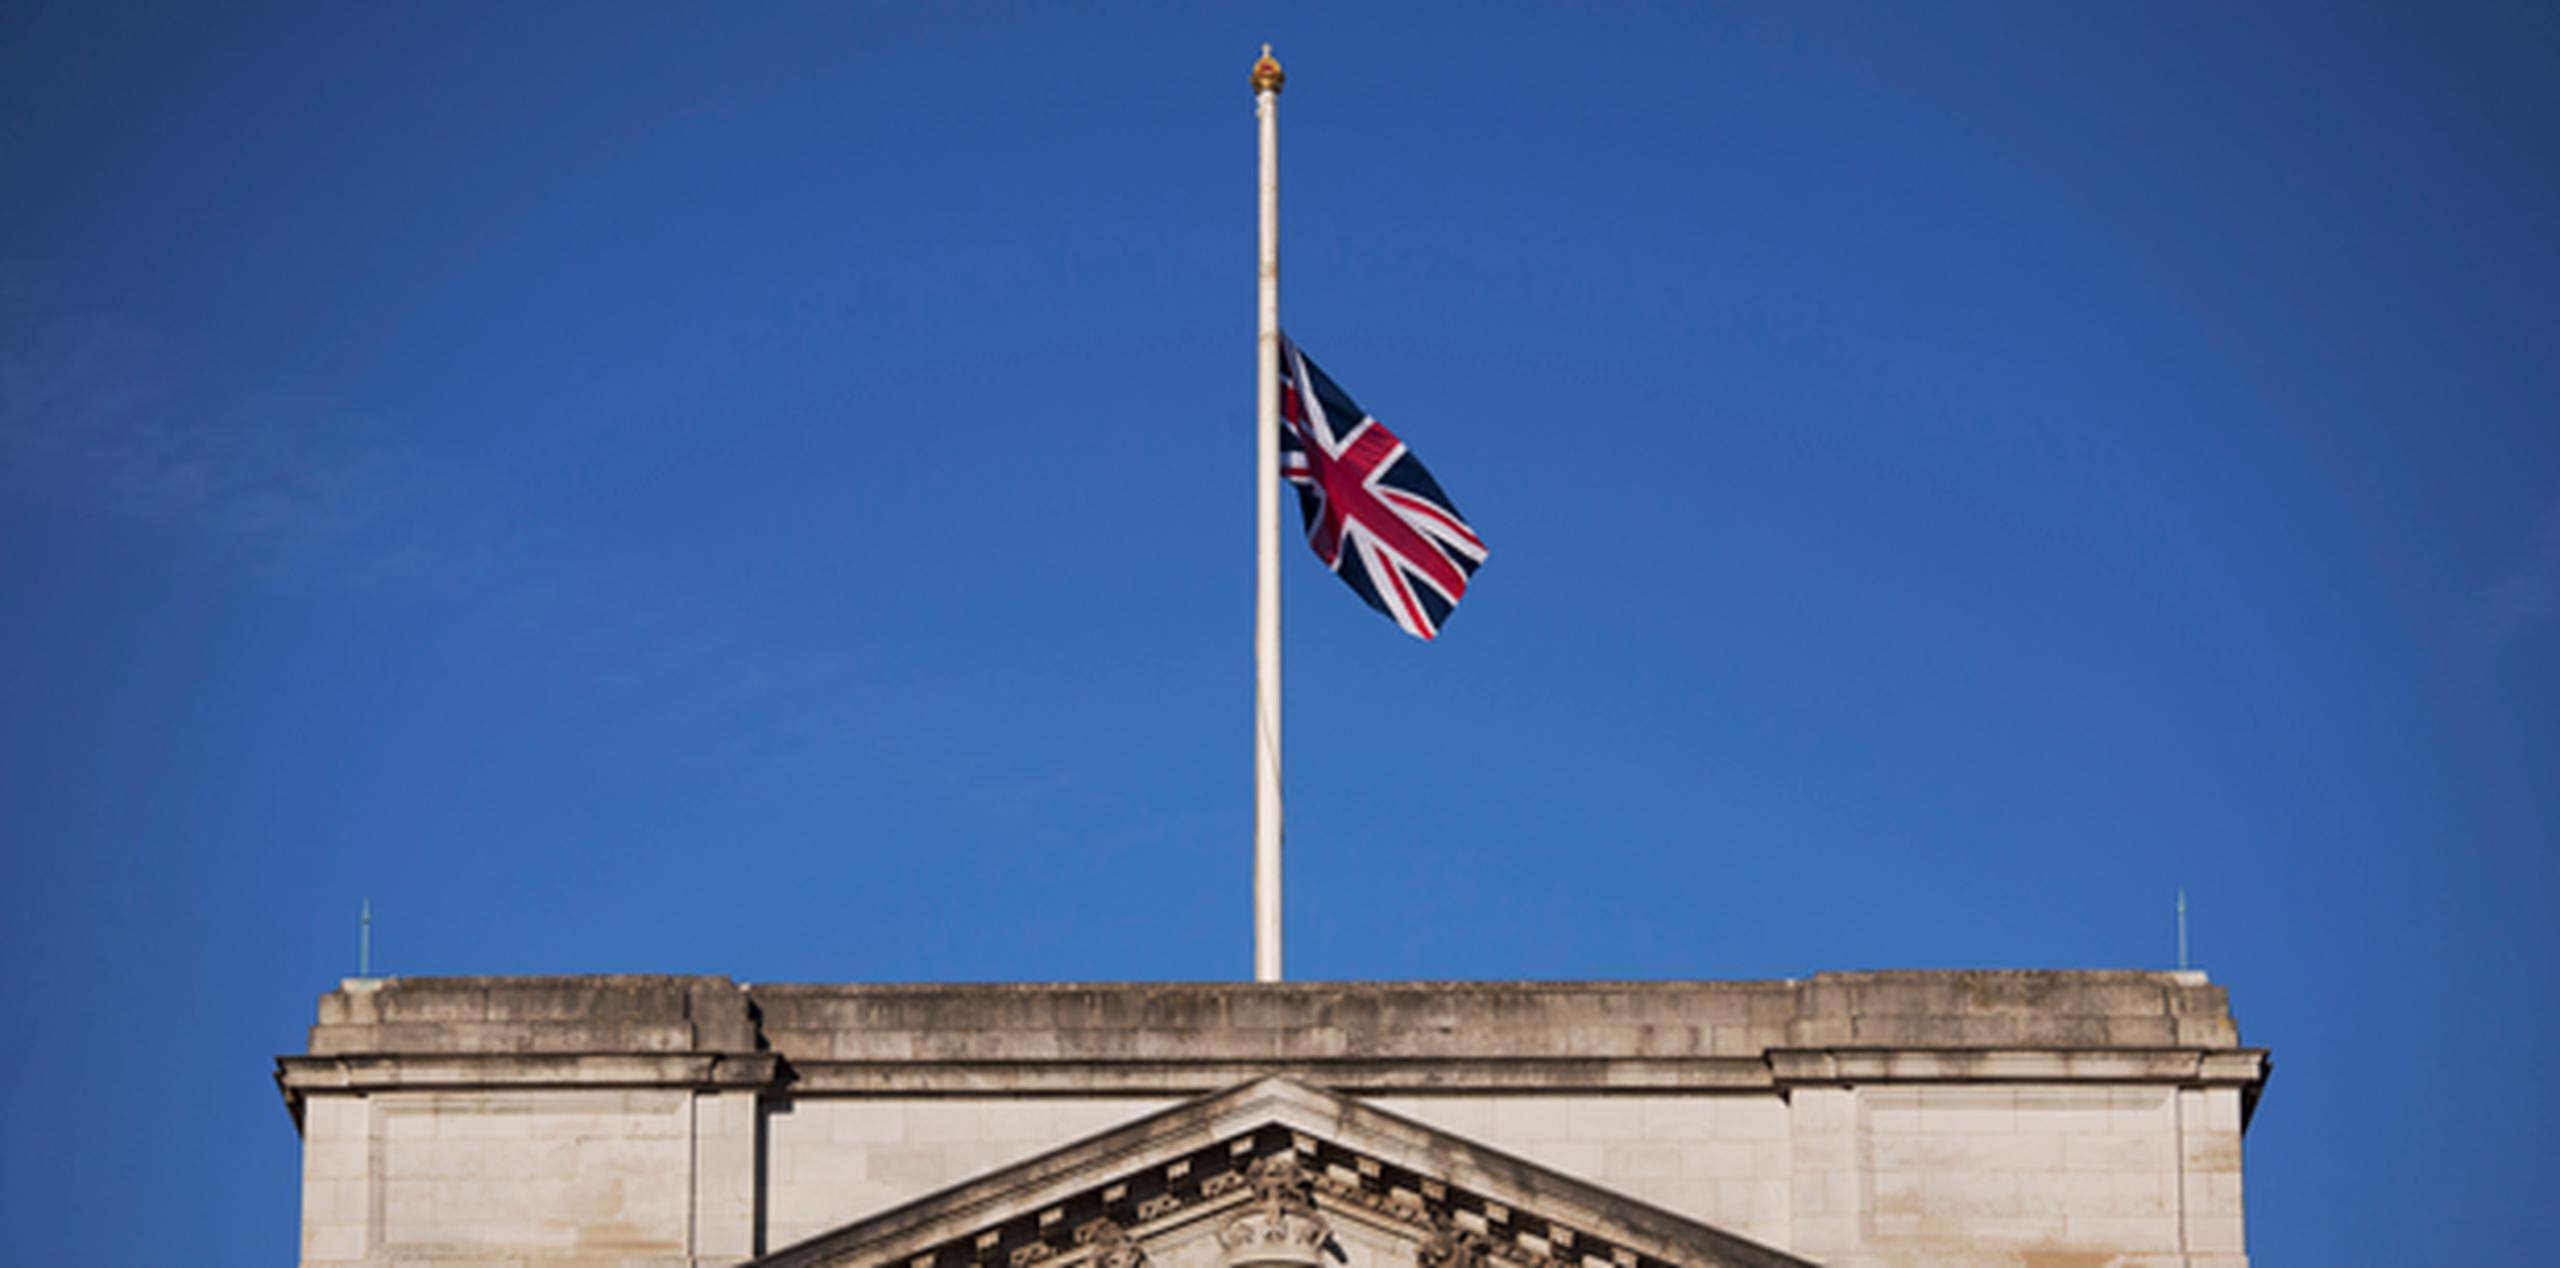 Las banderas ondearon a media asta en el Palacio de Buckingham y en edificios del gobierno de Gran Bretaña. (AP)